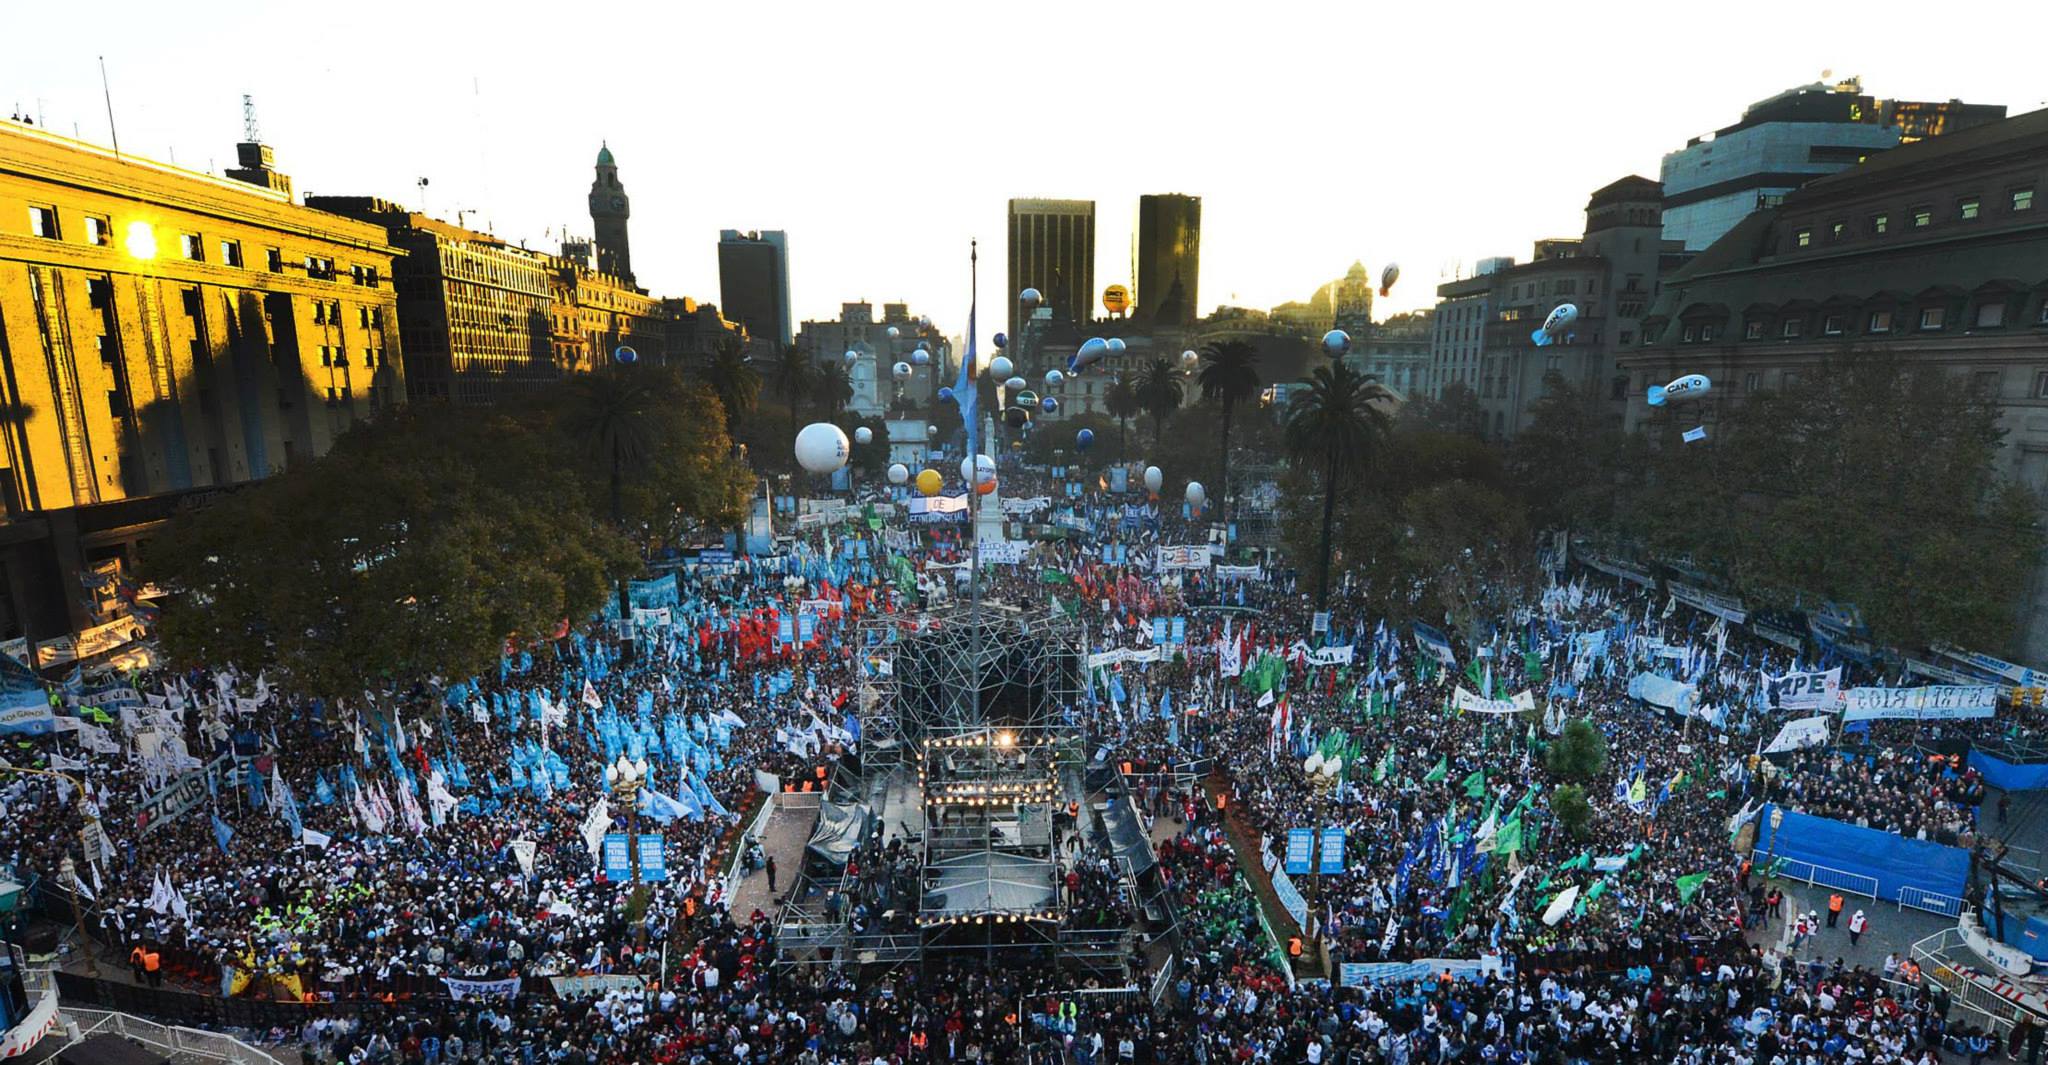 El 25 de mayo de 2013 Cristina Kirchner habló de 700 mil personas en la Plaza de Mayo, reunidas por organizaciones políticas, movimientos sociales, entidades de Derechos Humanos y mortales comunes